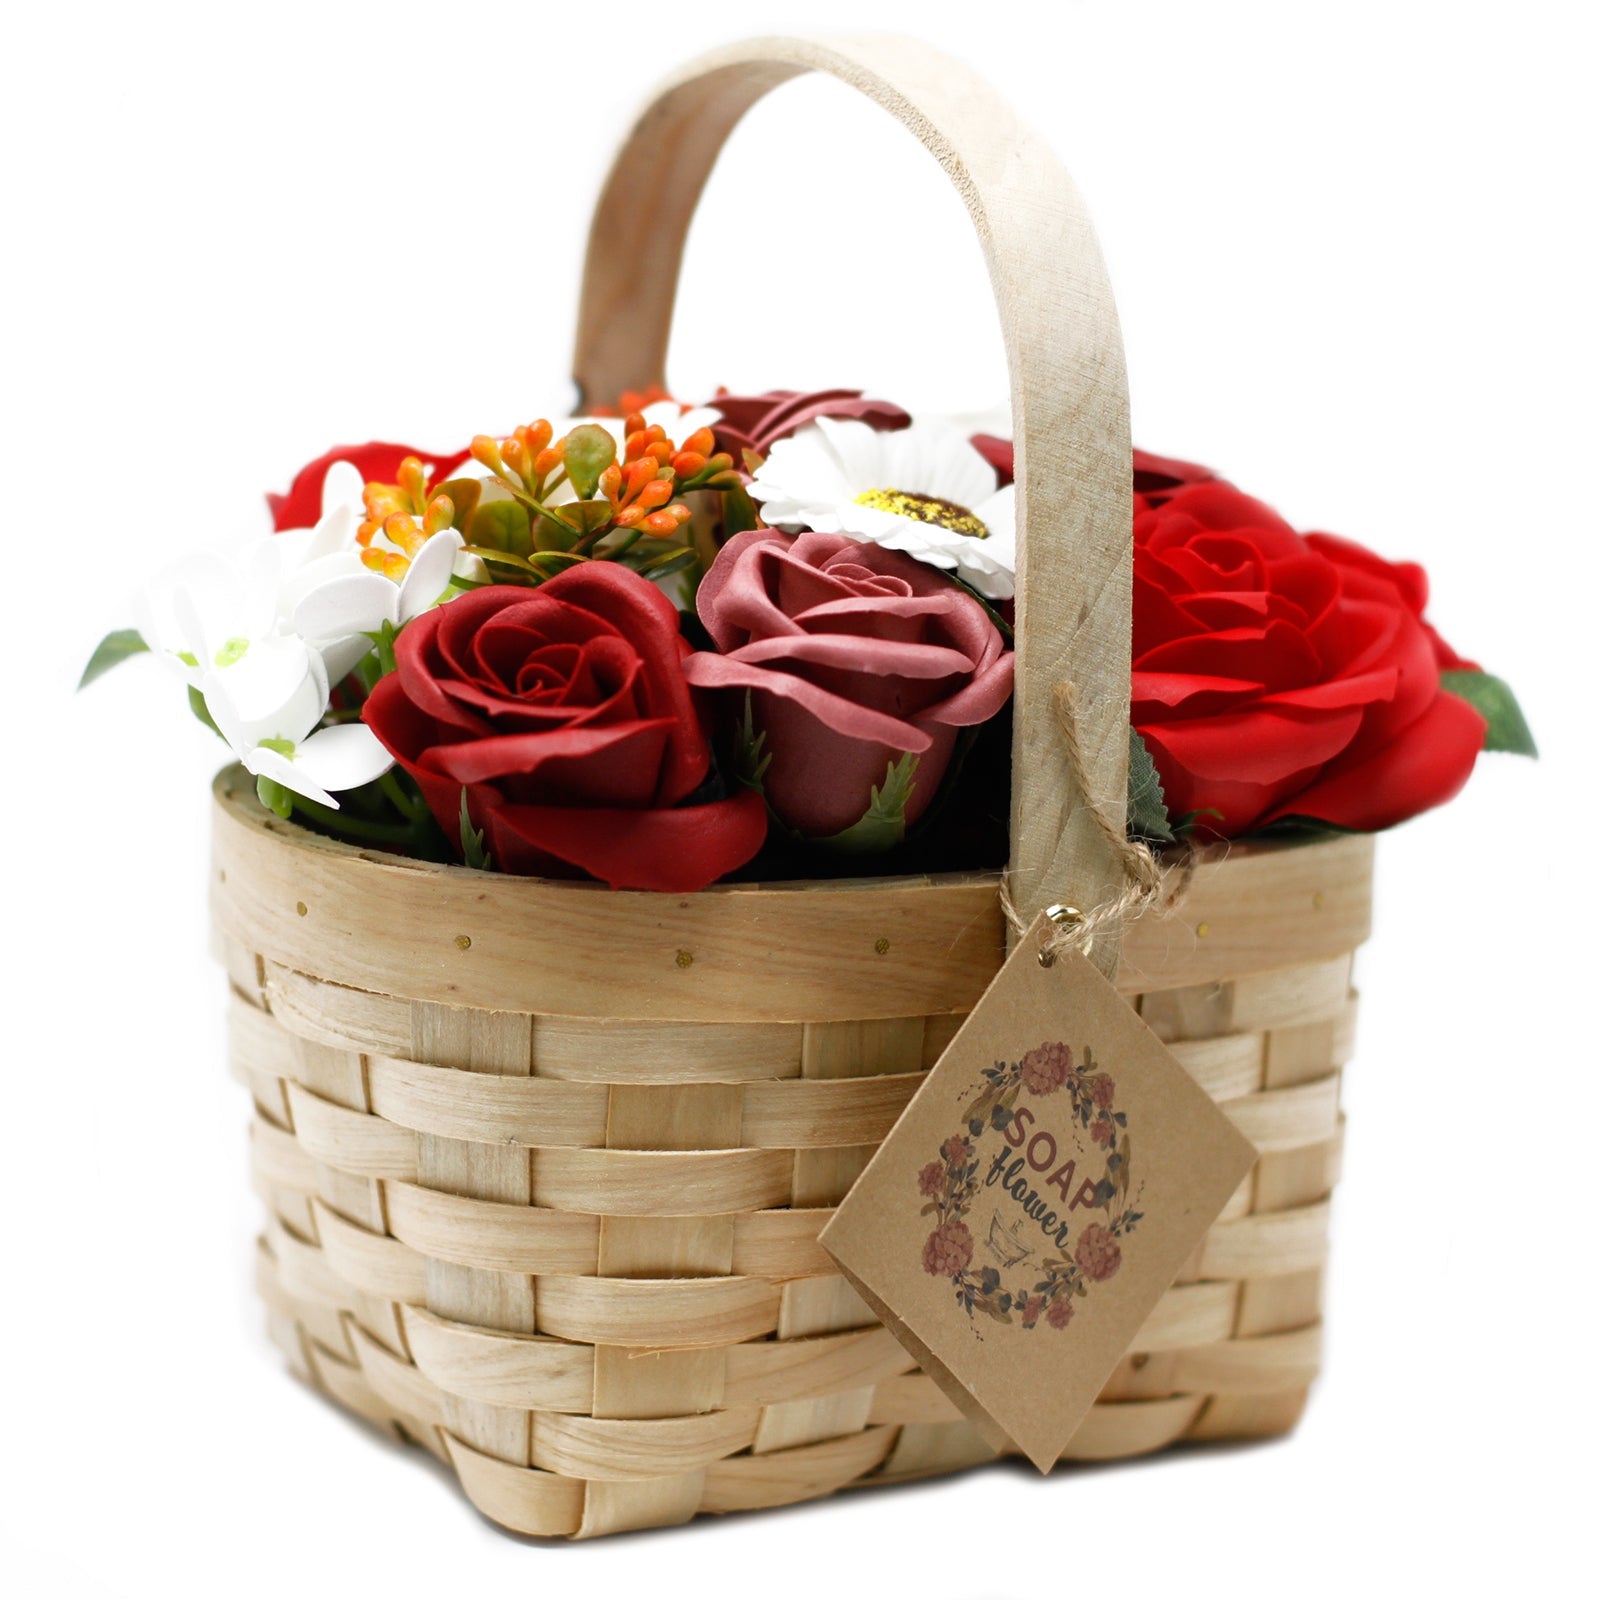 Large Red Bouquet of Soap Flowers in Wicker Basket - Ultrabee